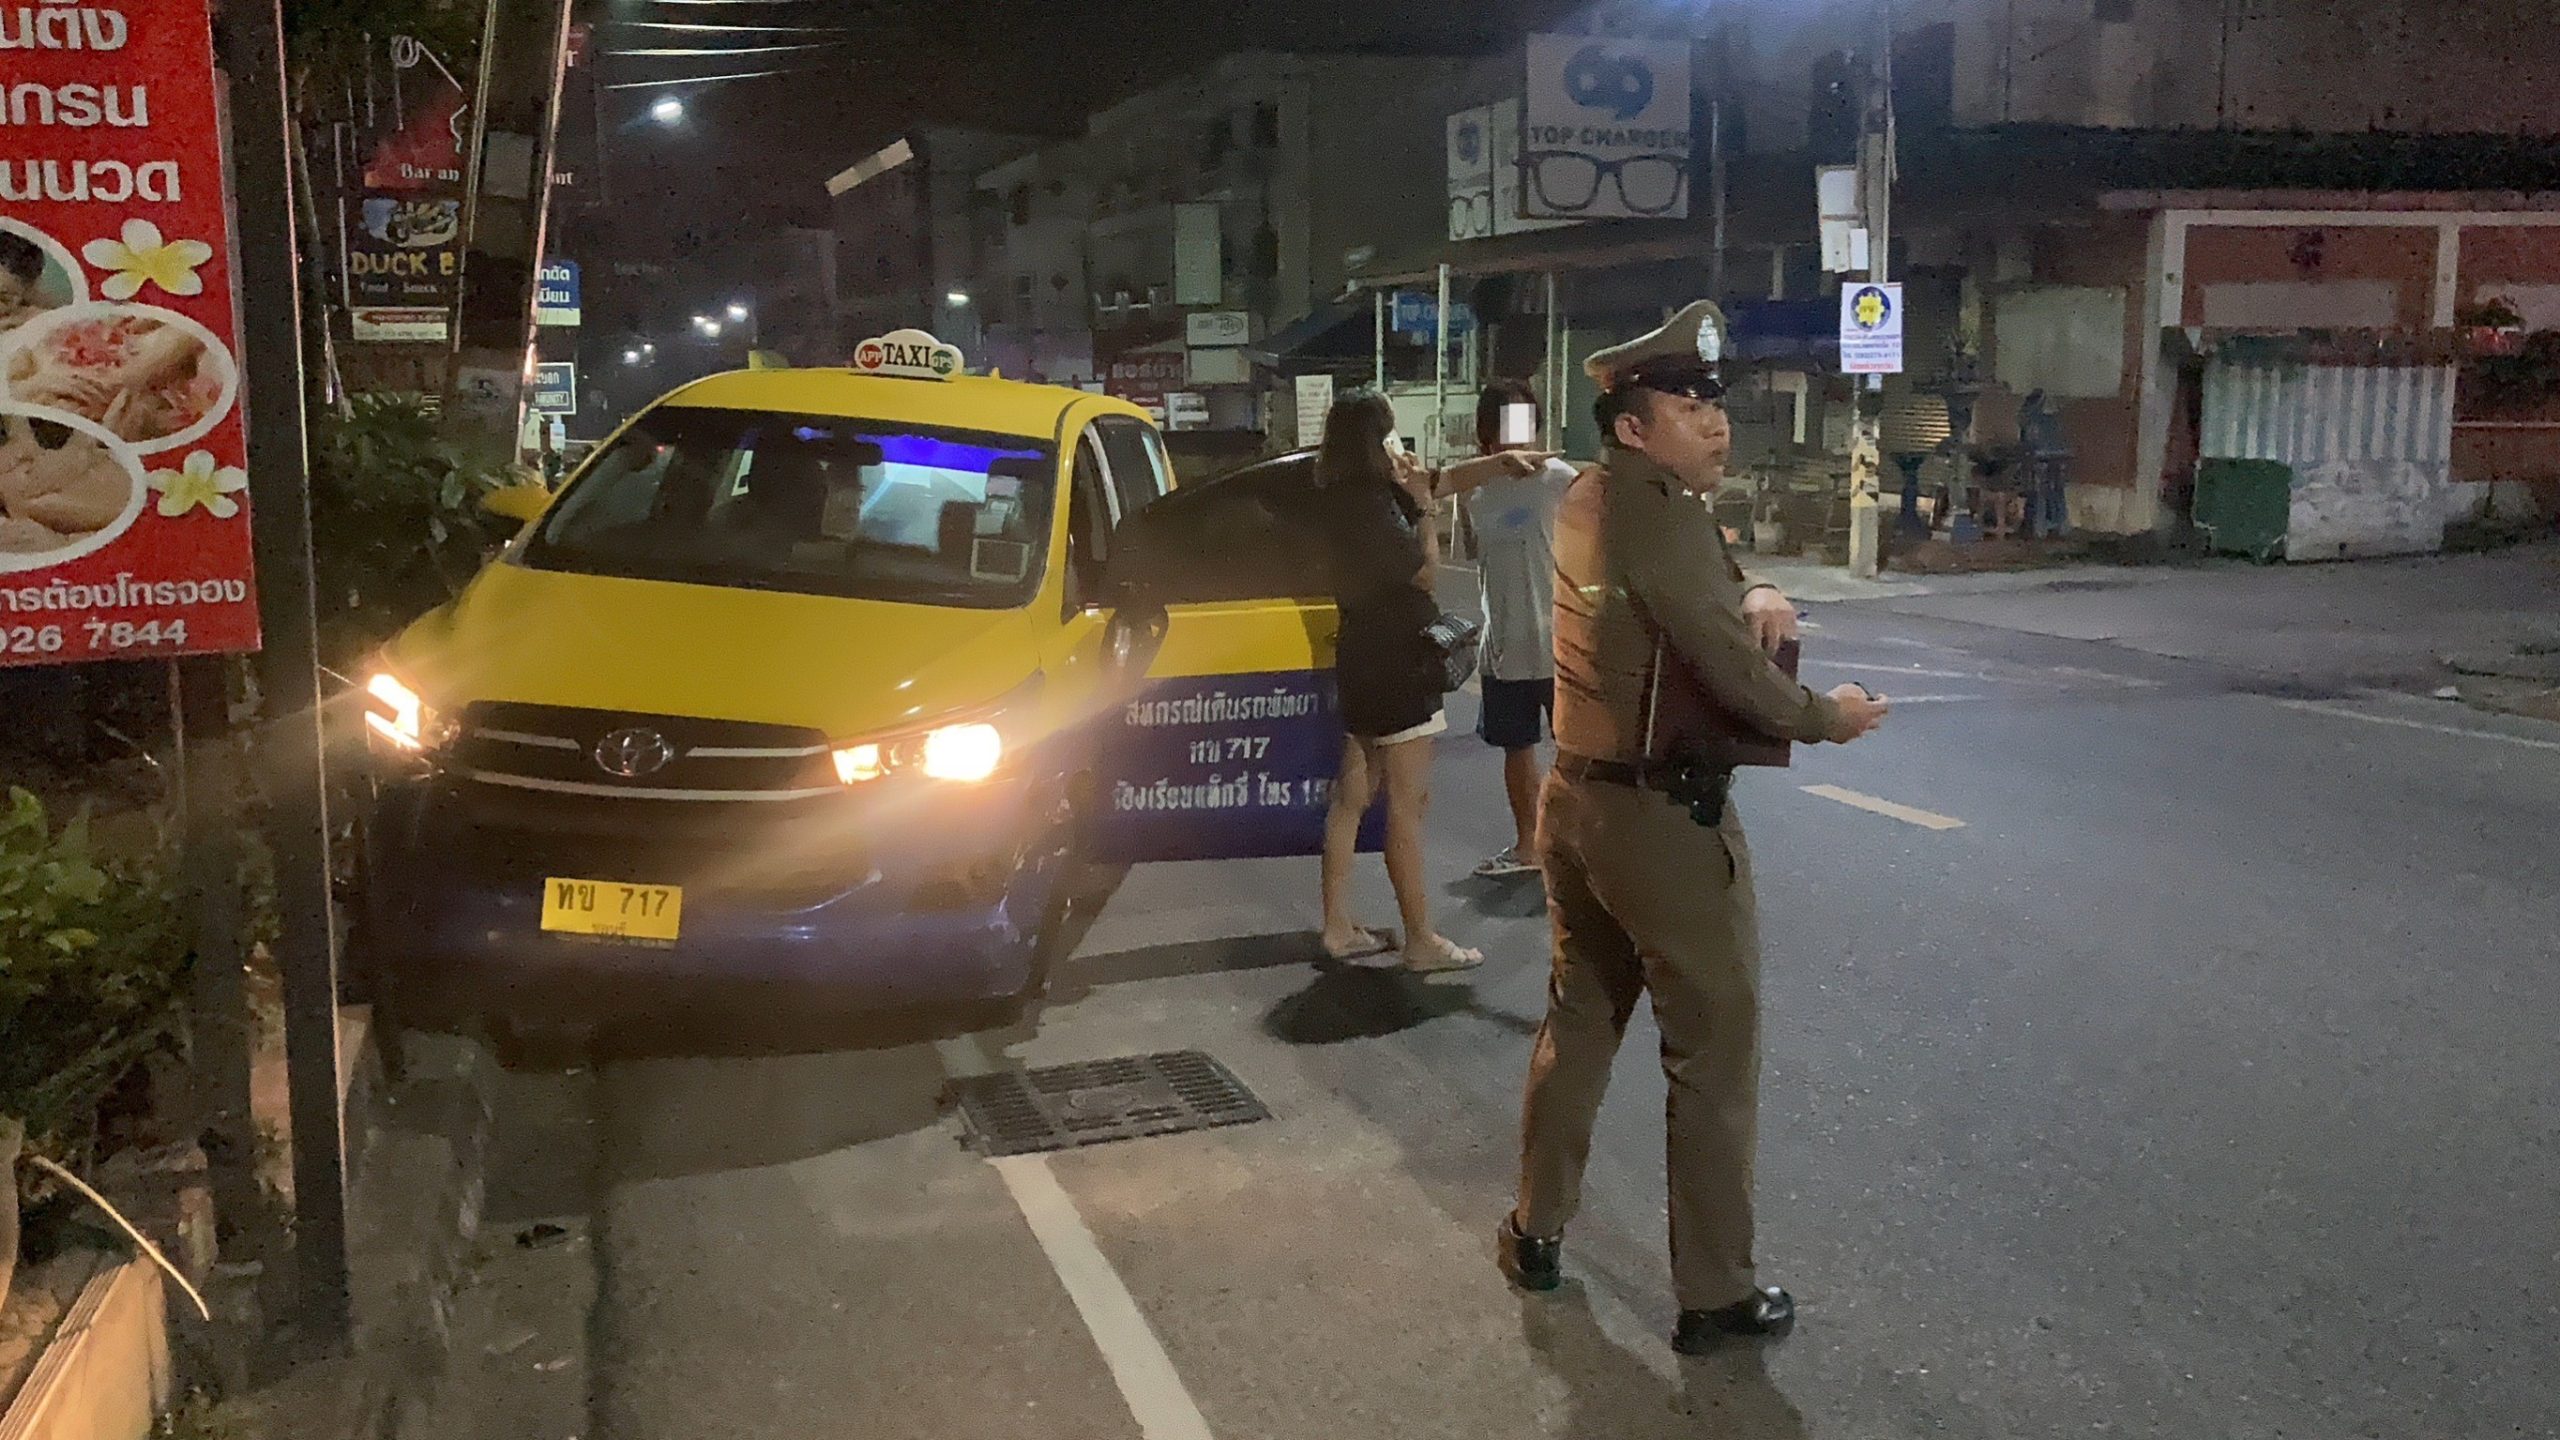 ชลบุรี-สาวใหญ่ขับแท็กซี่เมาชนกระบะ อ้างมีปากเสียงกับแฟน ตร.นำตัวเป่าแอลกอฮอล์